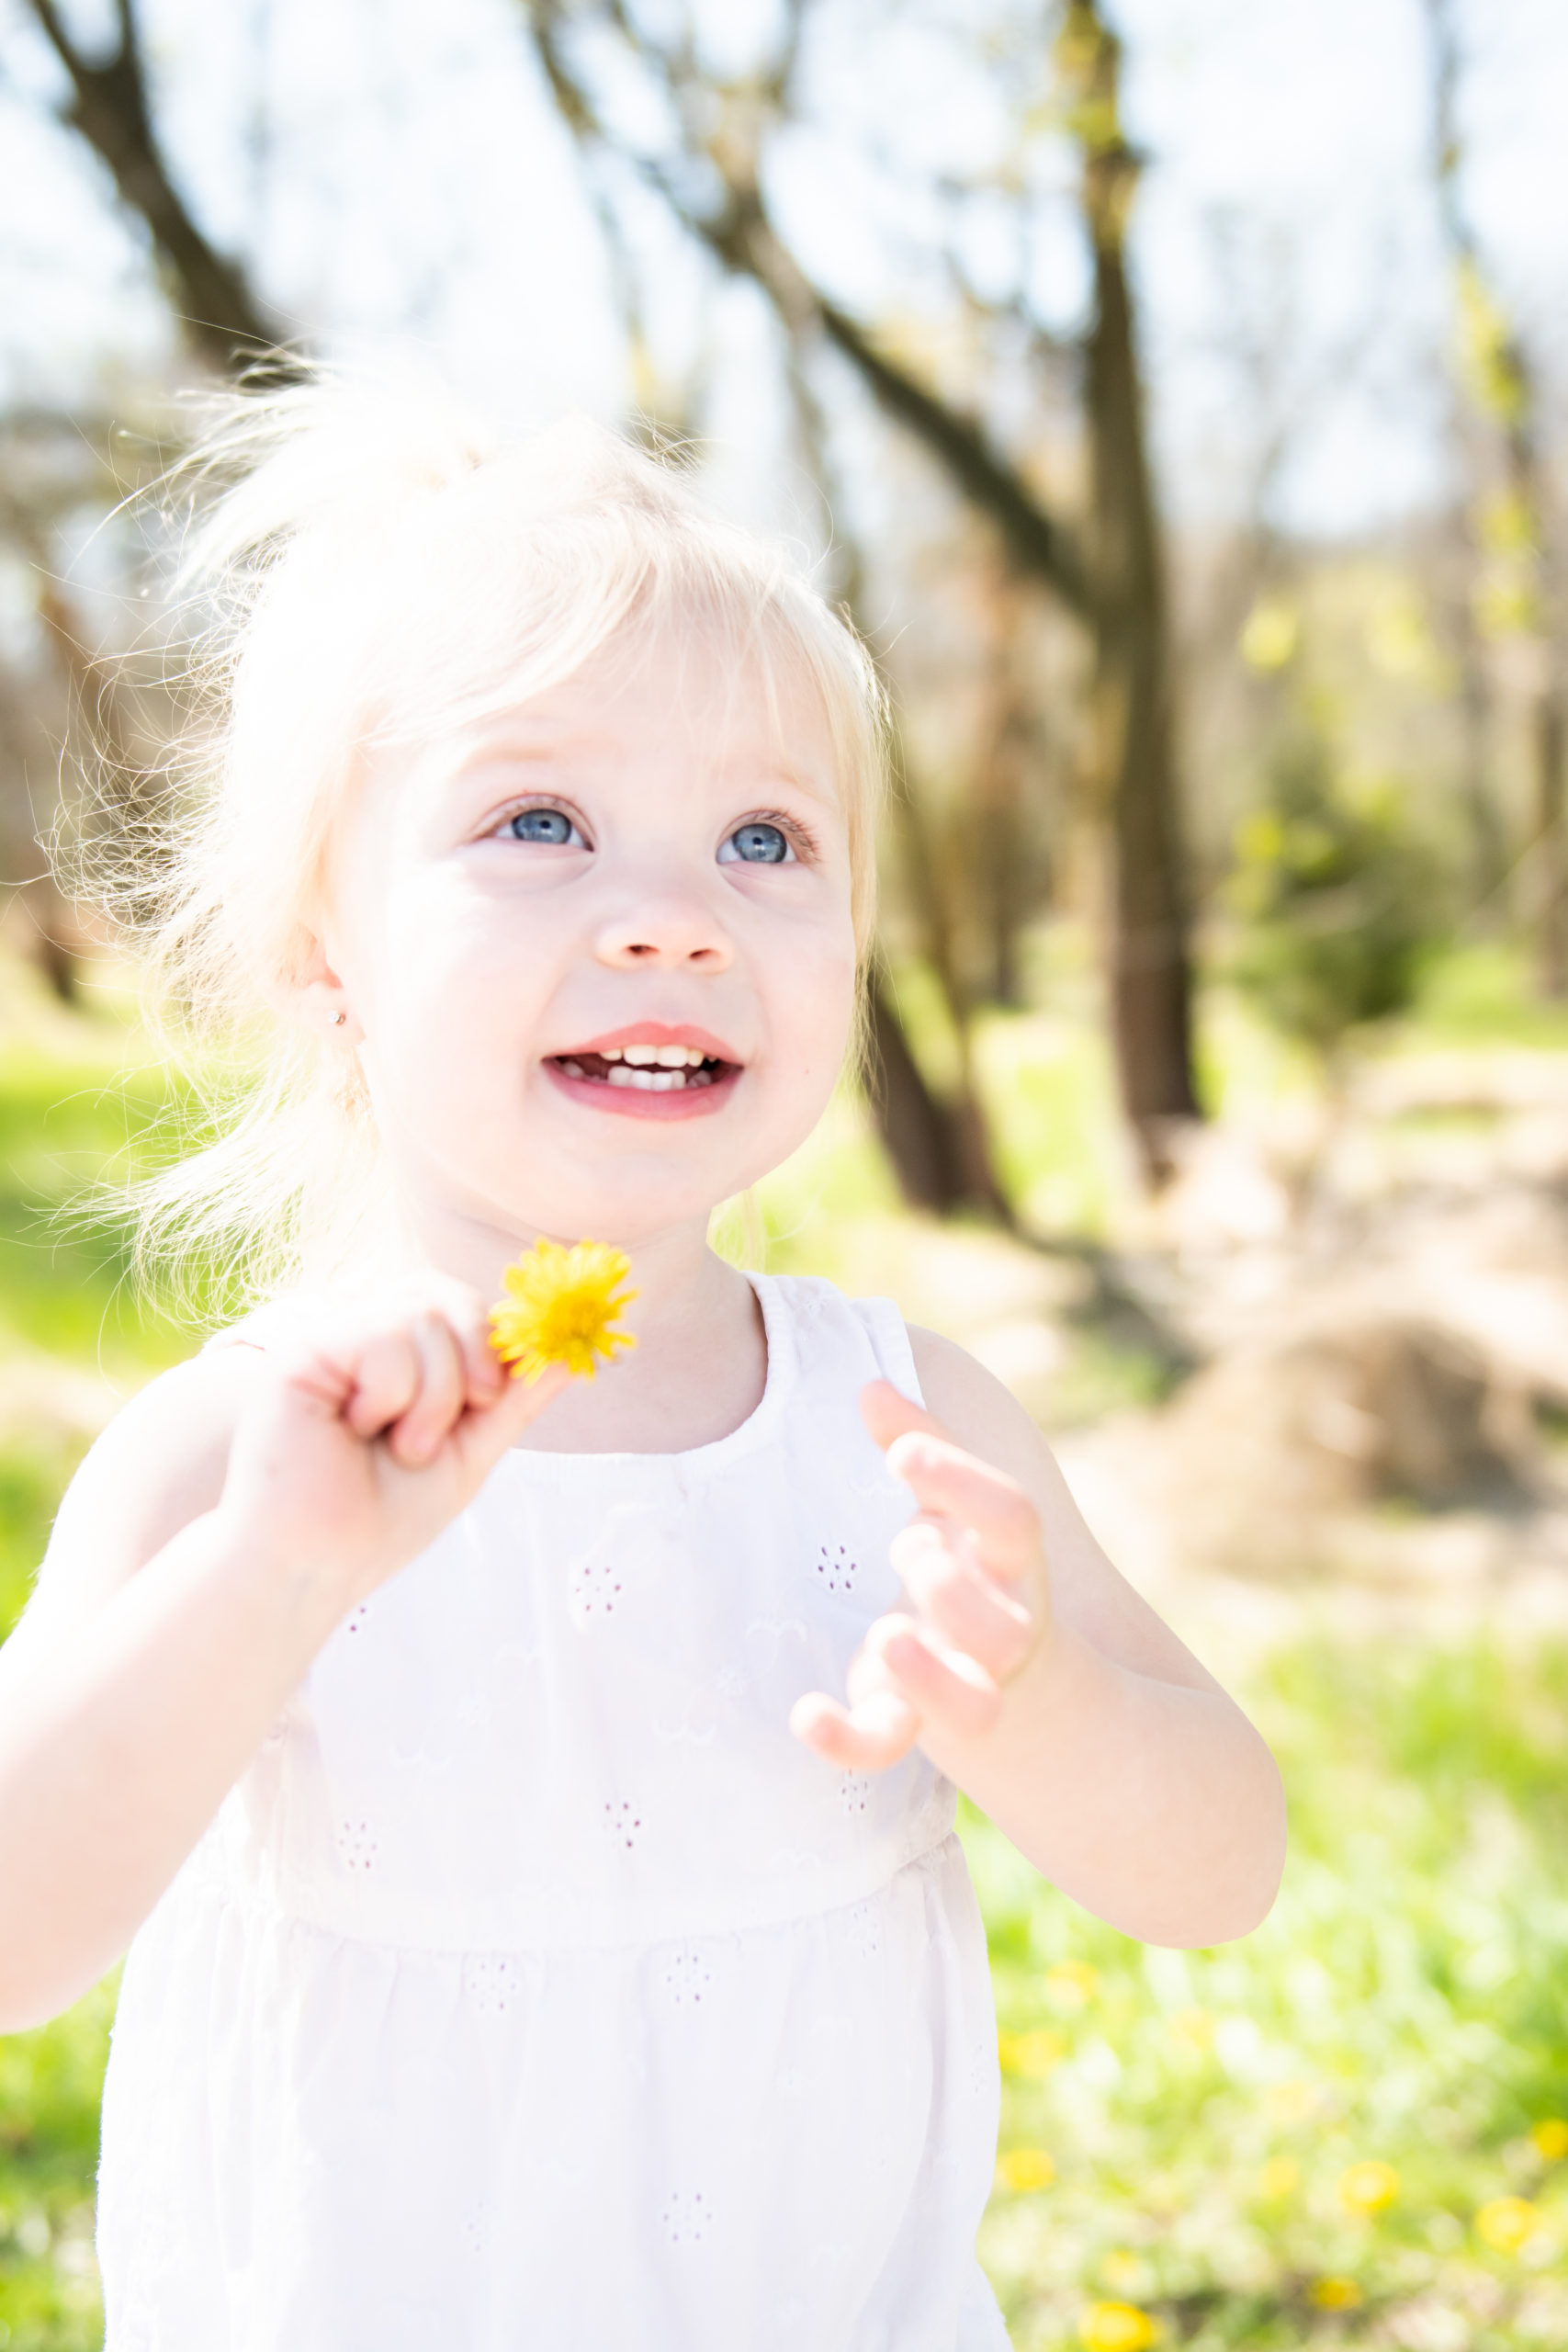 Little girl holding dandelion in Nebraska park